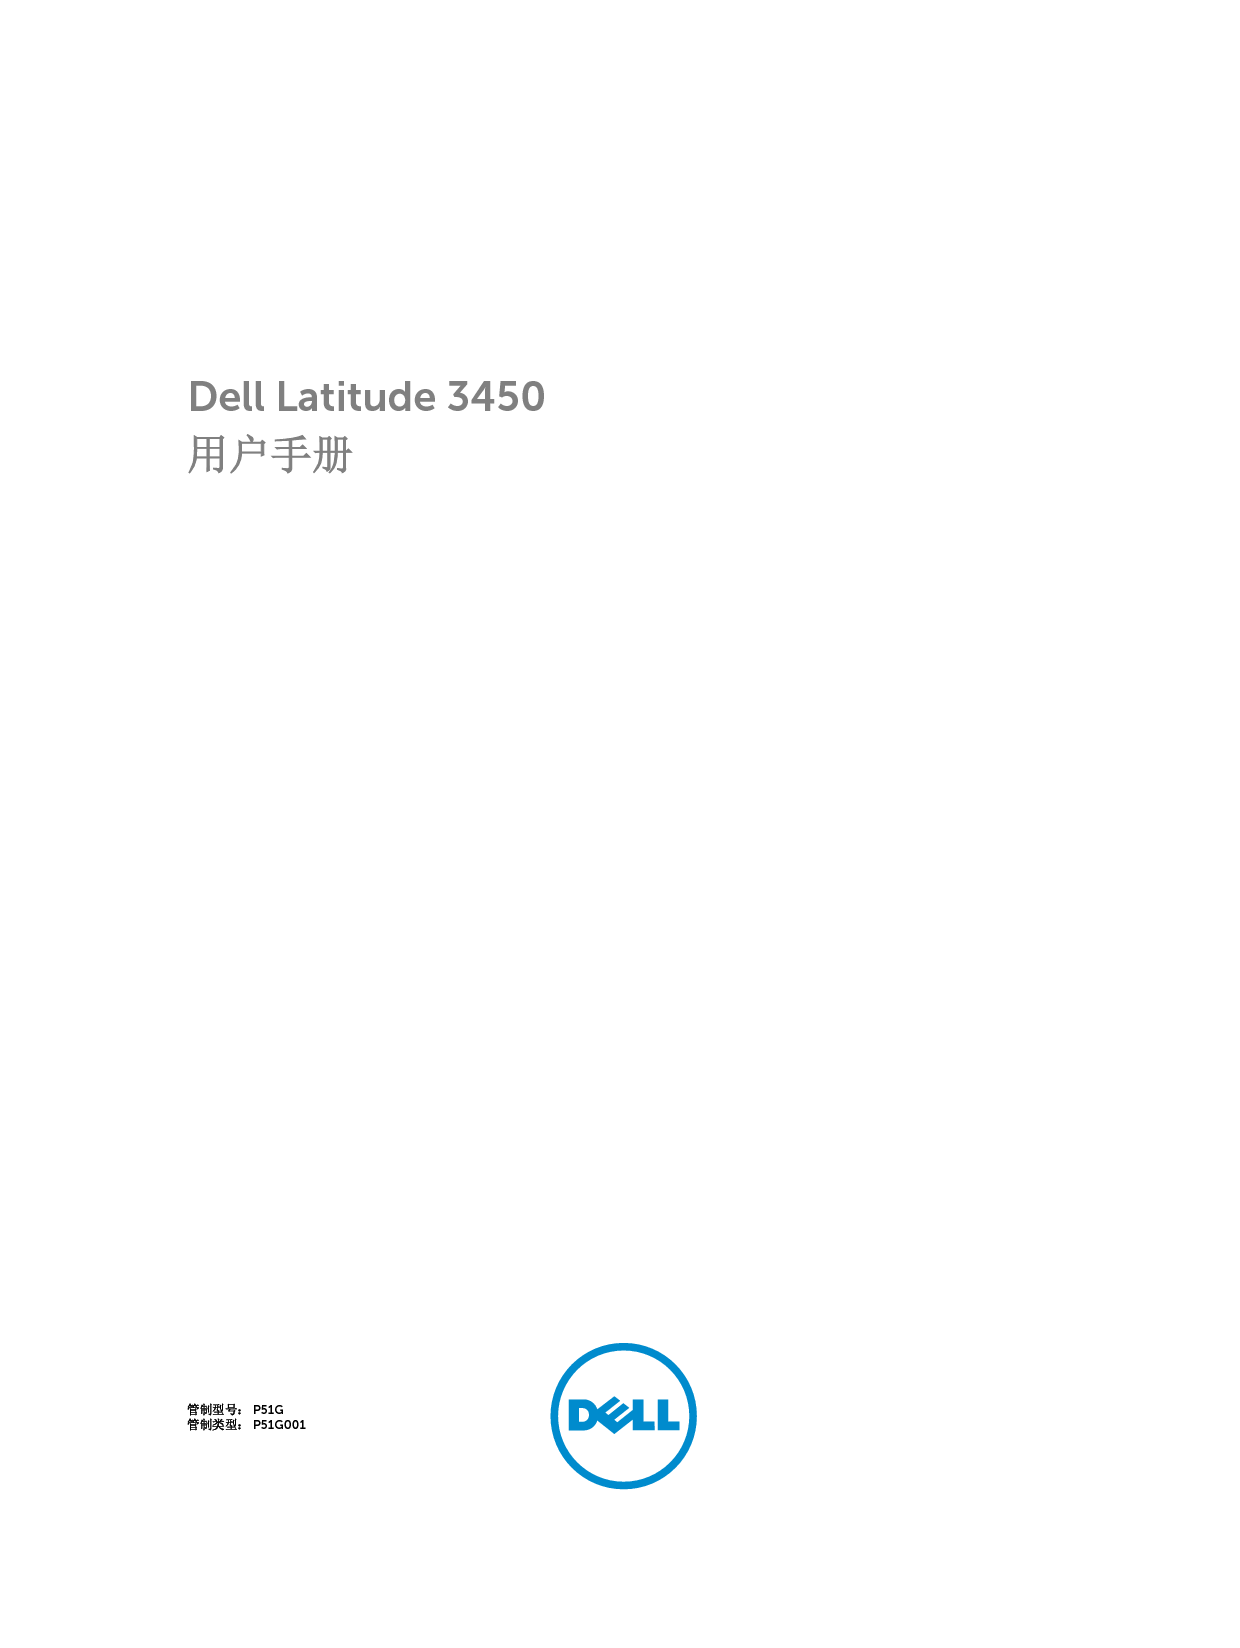 戴尔 Dell Latitude 3450 用户手册 封面